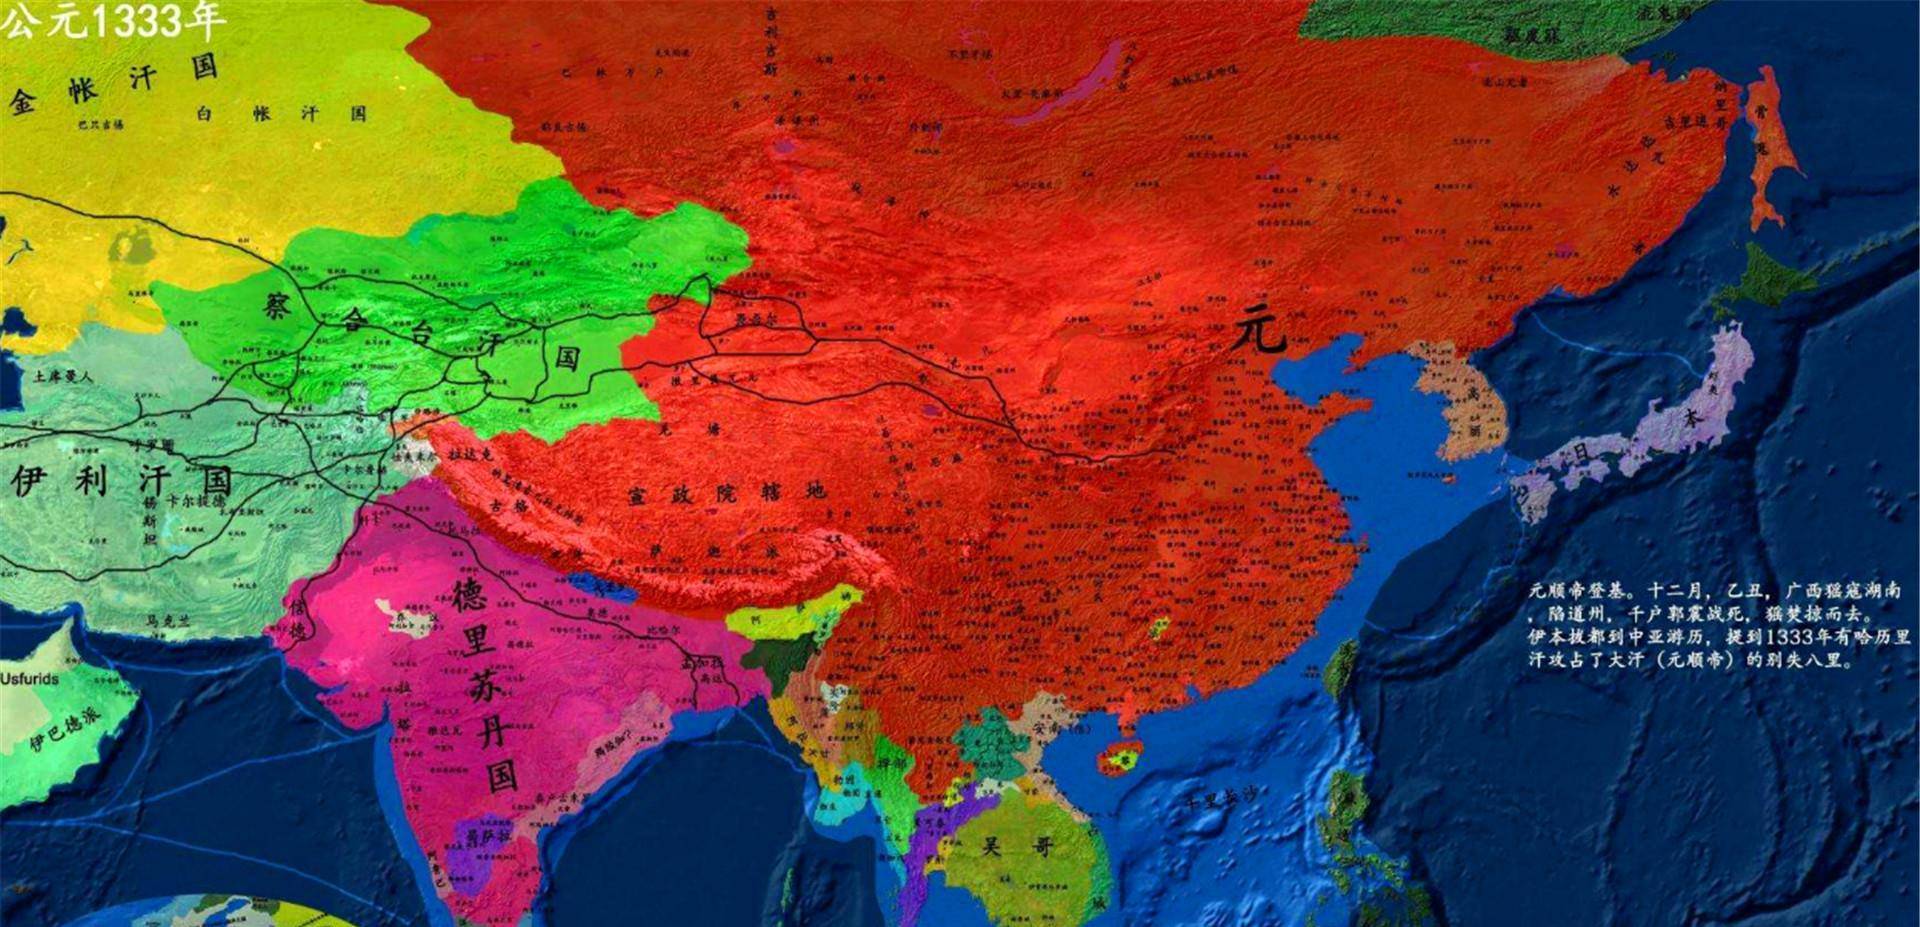 元朝版图元朝自成吉思汗建立以来,建立了许许多多的政权,元朝的附属